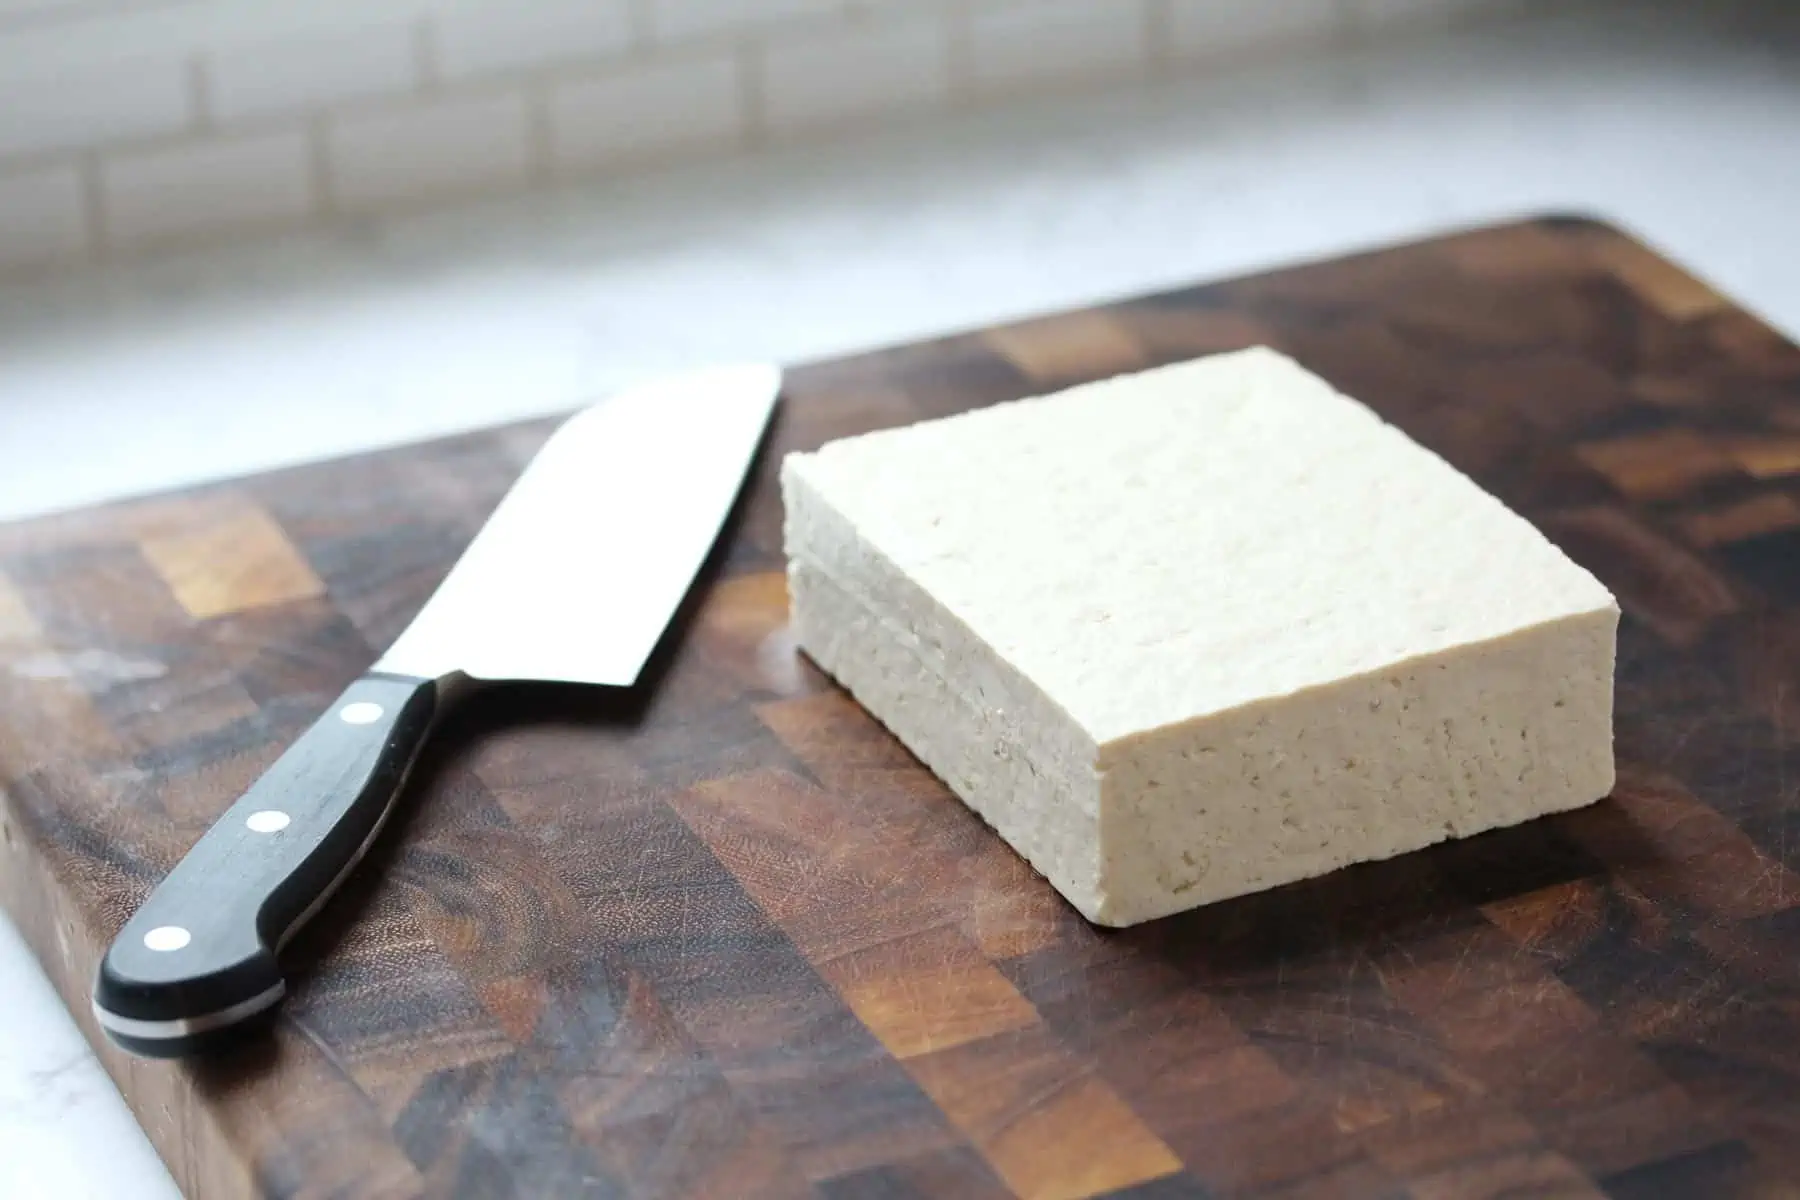 Brick of tofu on cutting board.